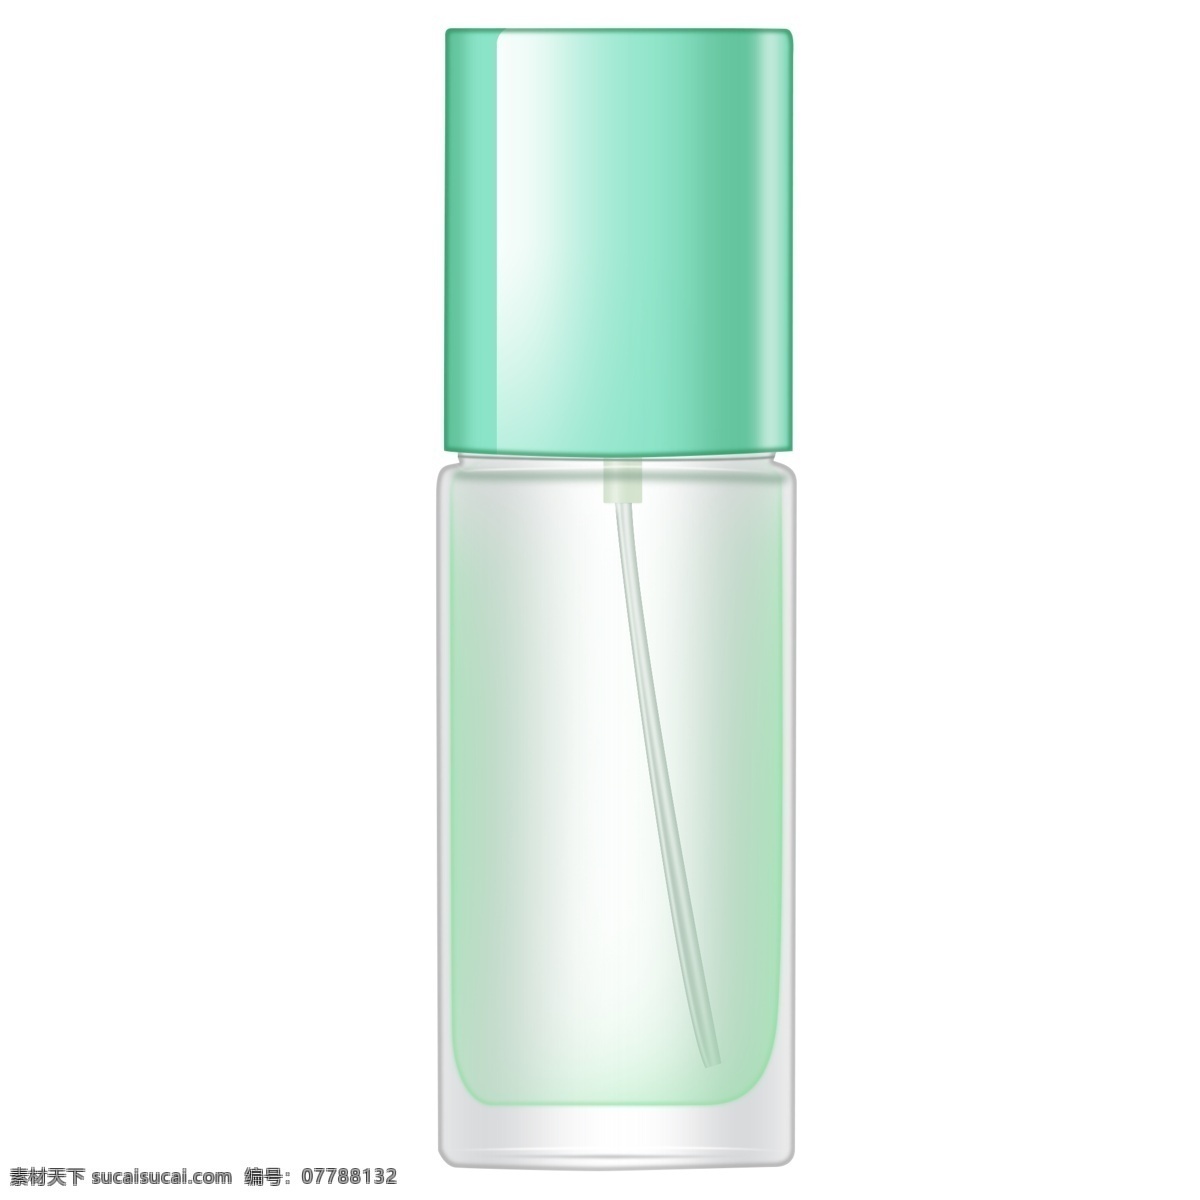 香水 塑料 瓶子 平面 效果图 彩妆 分装瓶 主图